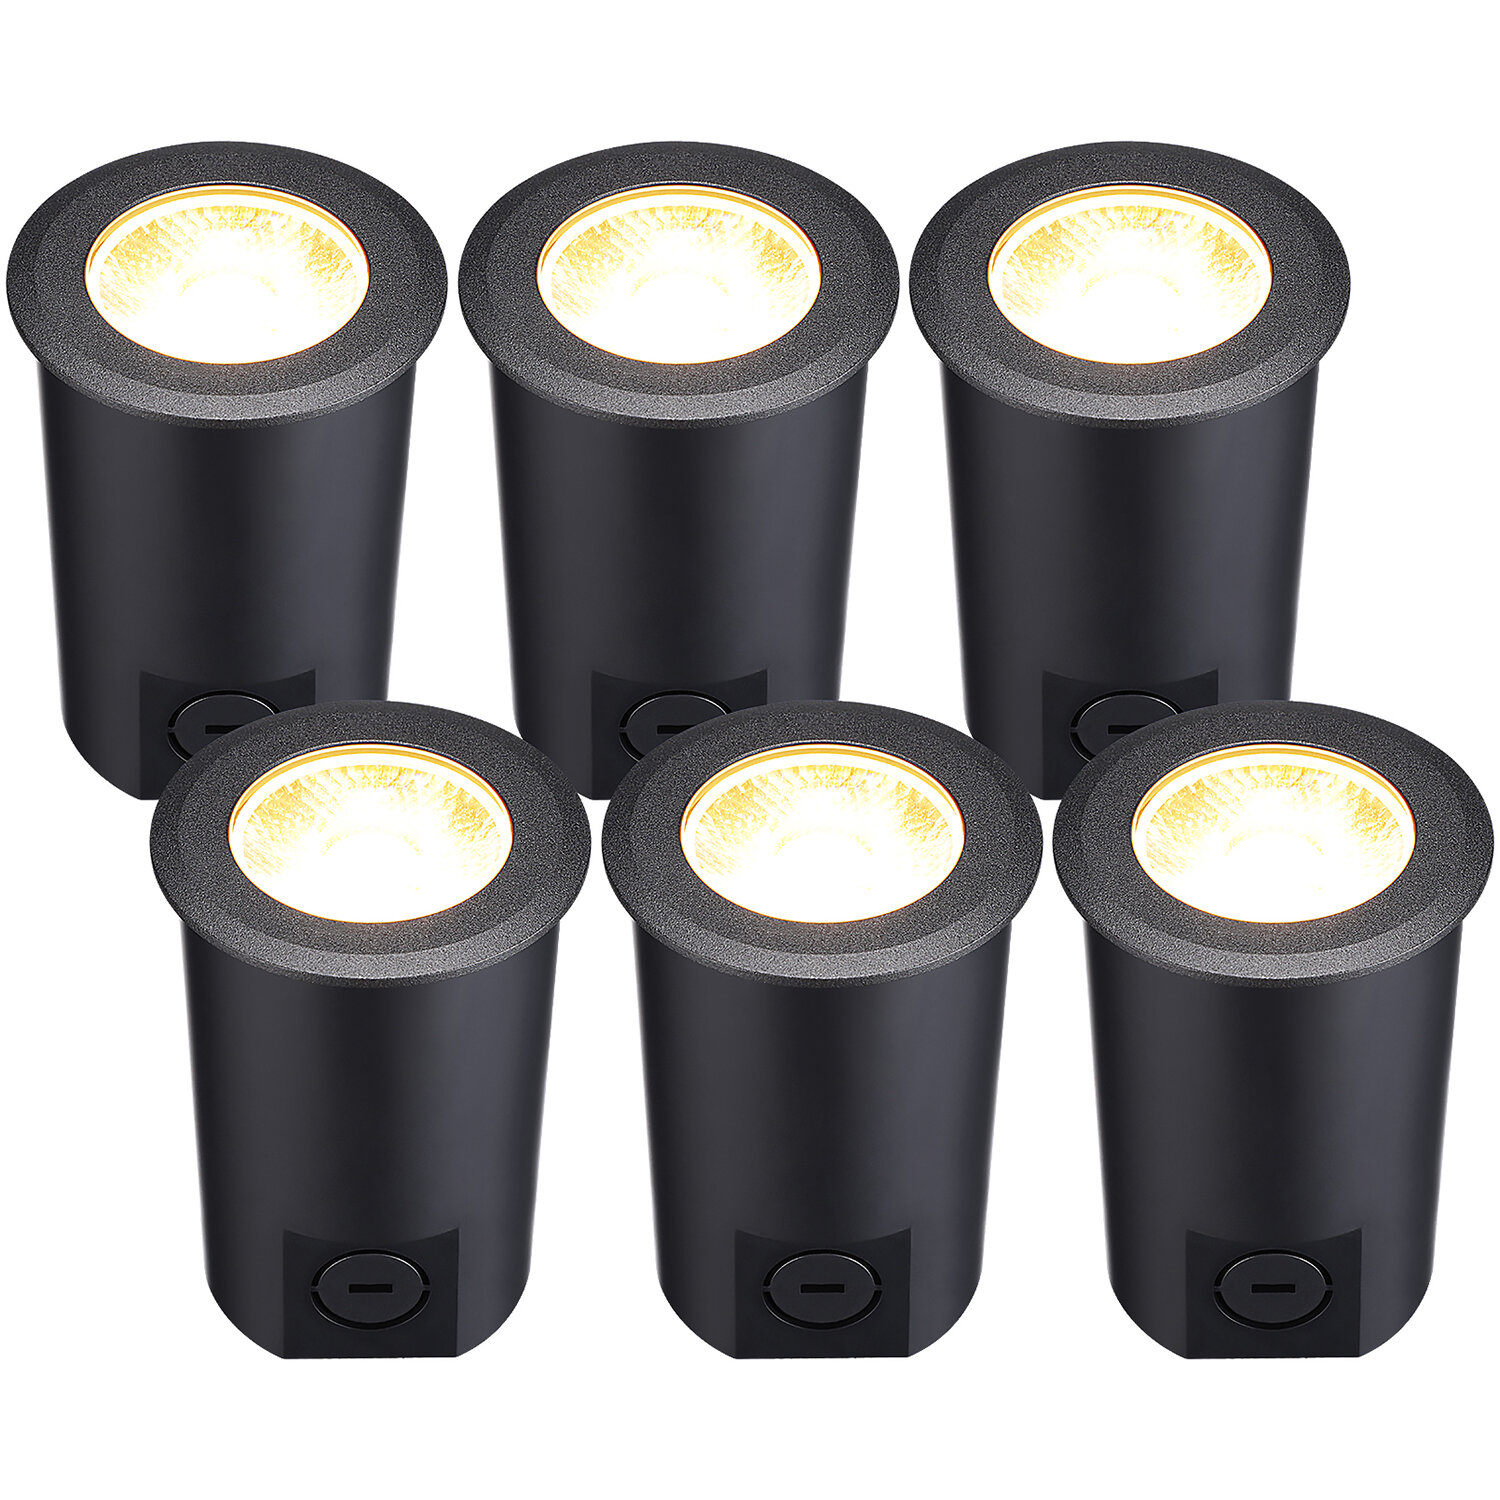 LEONLITE Black Integrated LED Well Light Pack  Reviews Wayfair